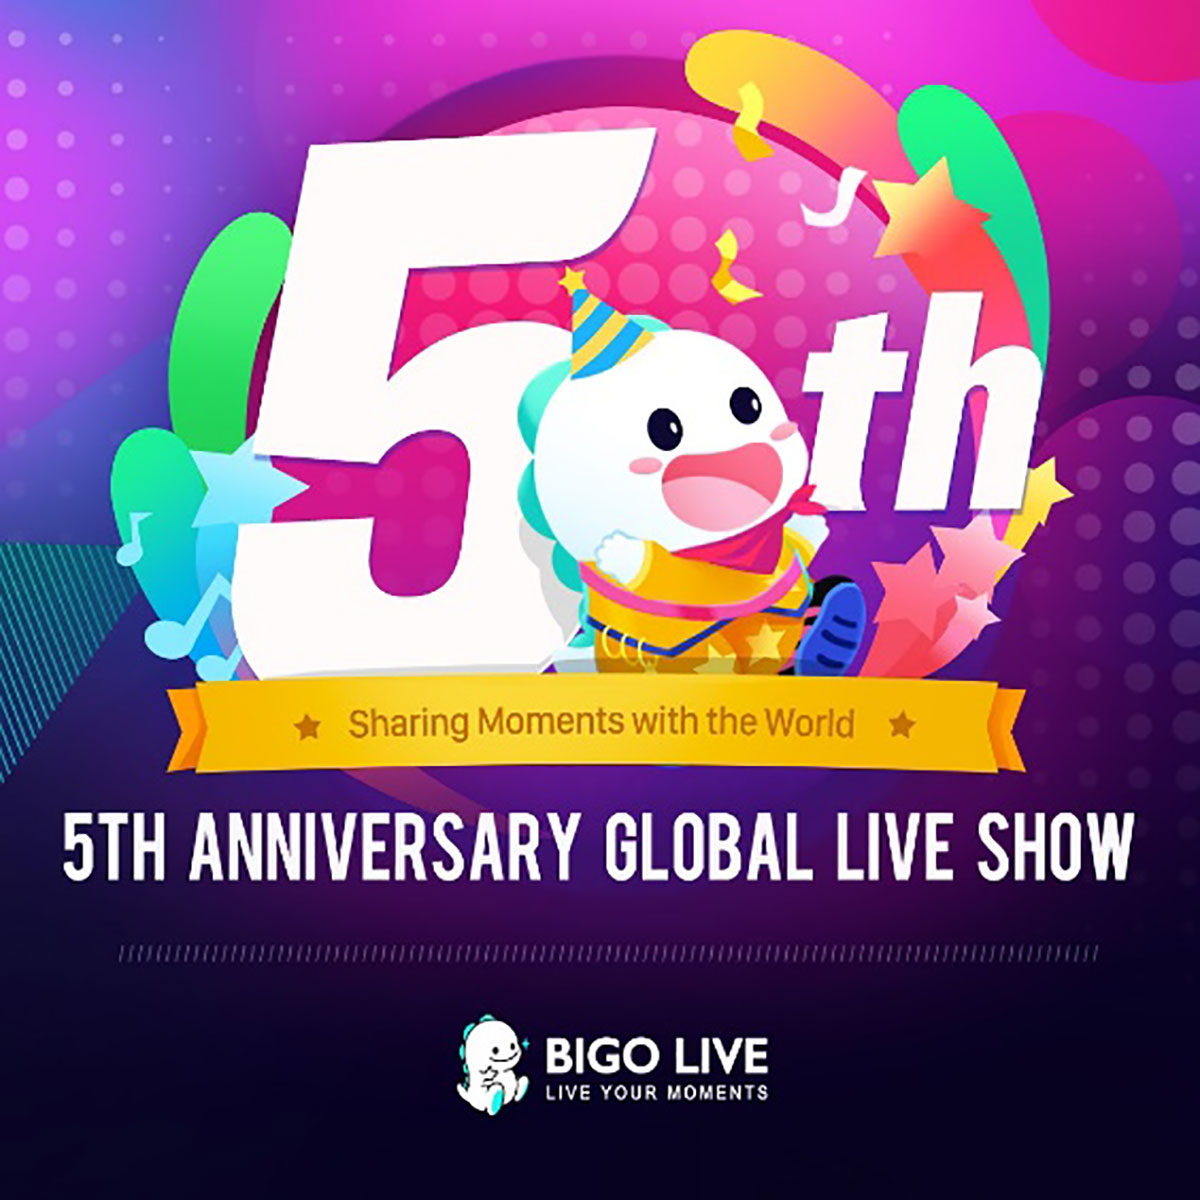 Chương trình livestream kỷ niệm sinh nhật lần thứ 5 của Bigo Live đã thu hút được 3,8 triệu người xem trên toàn thế giới